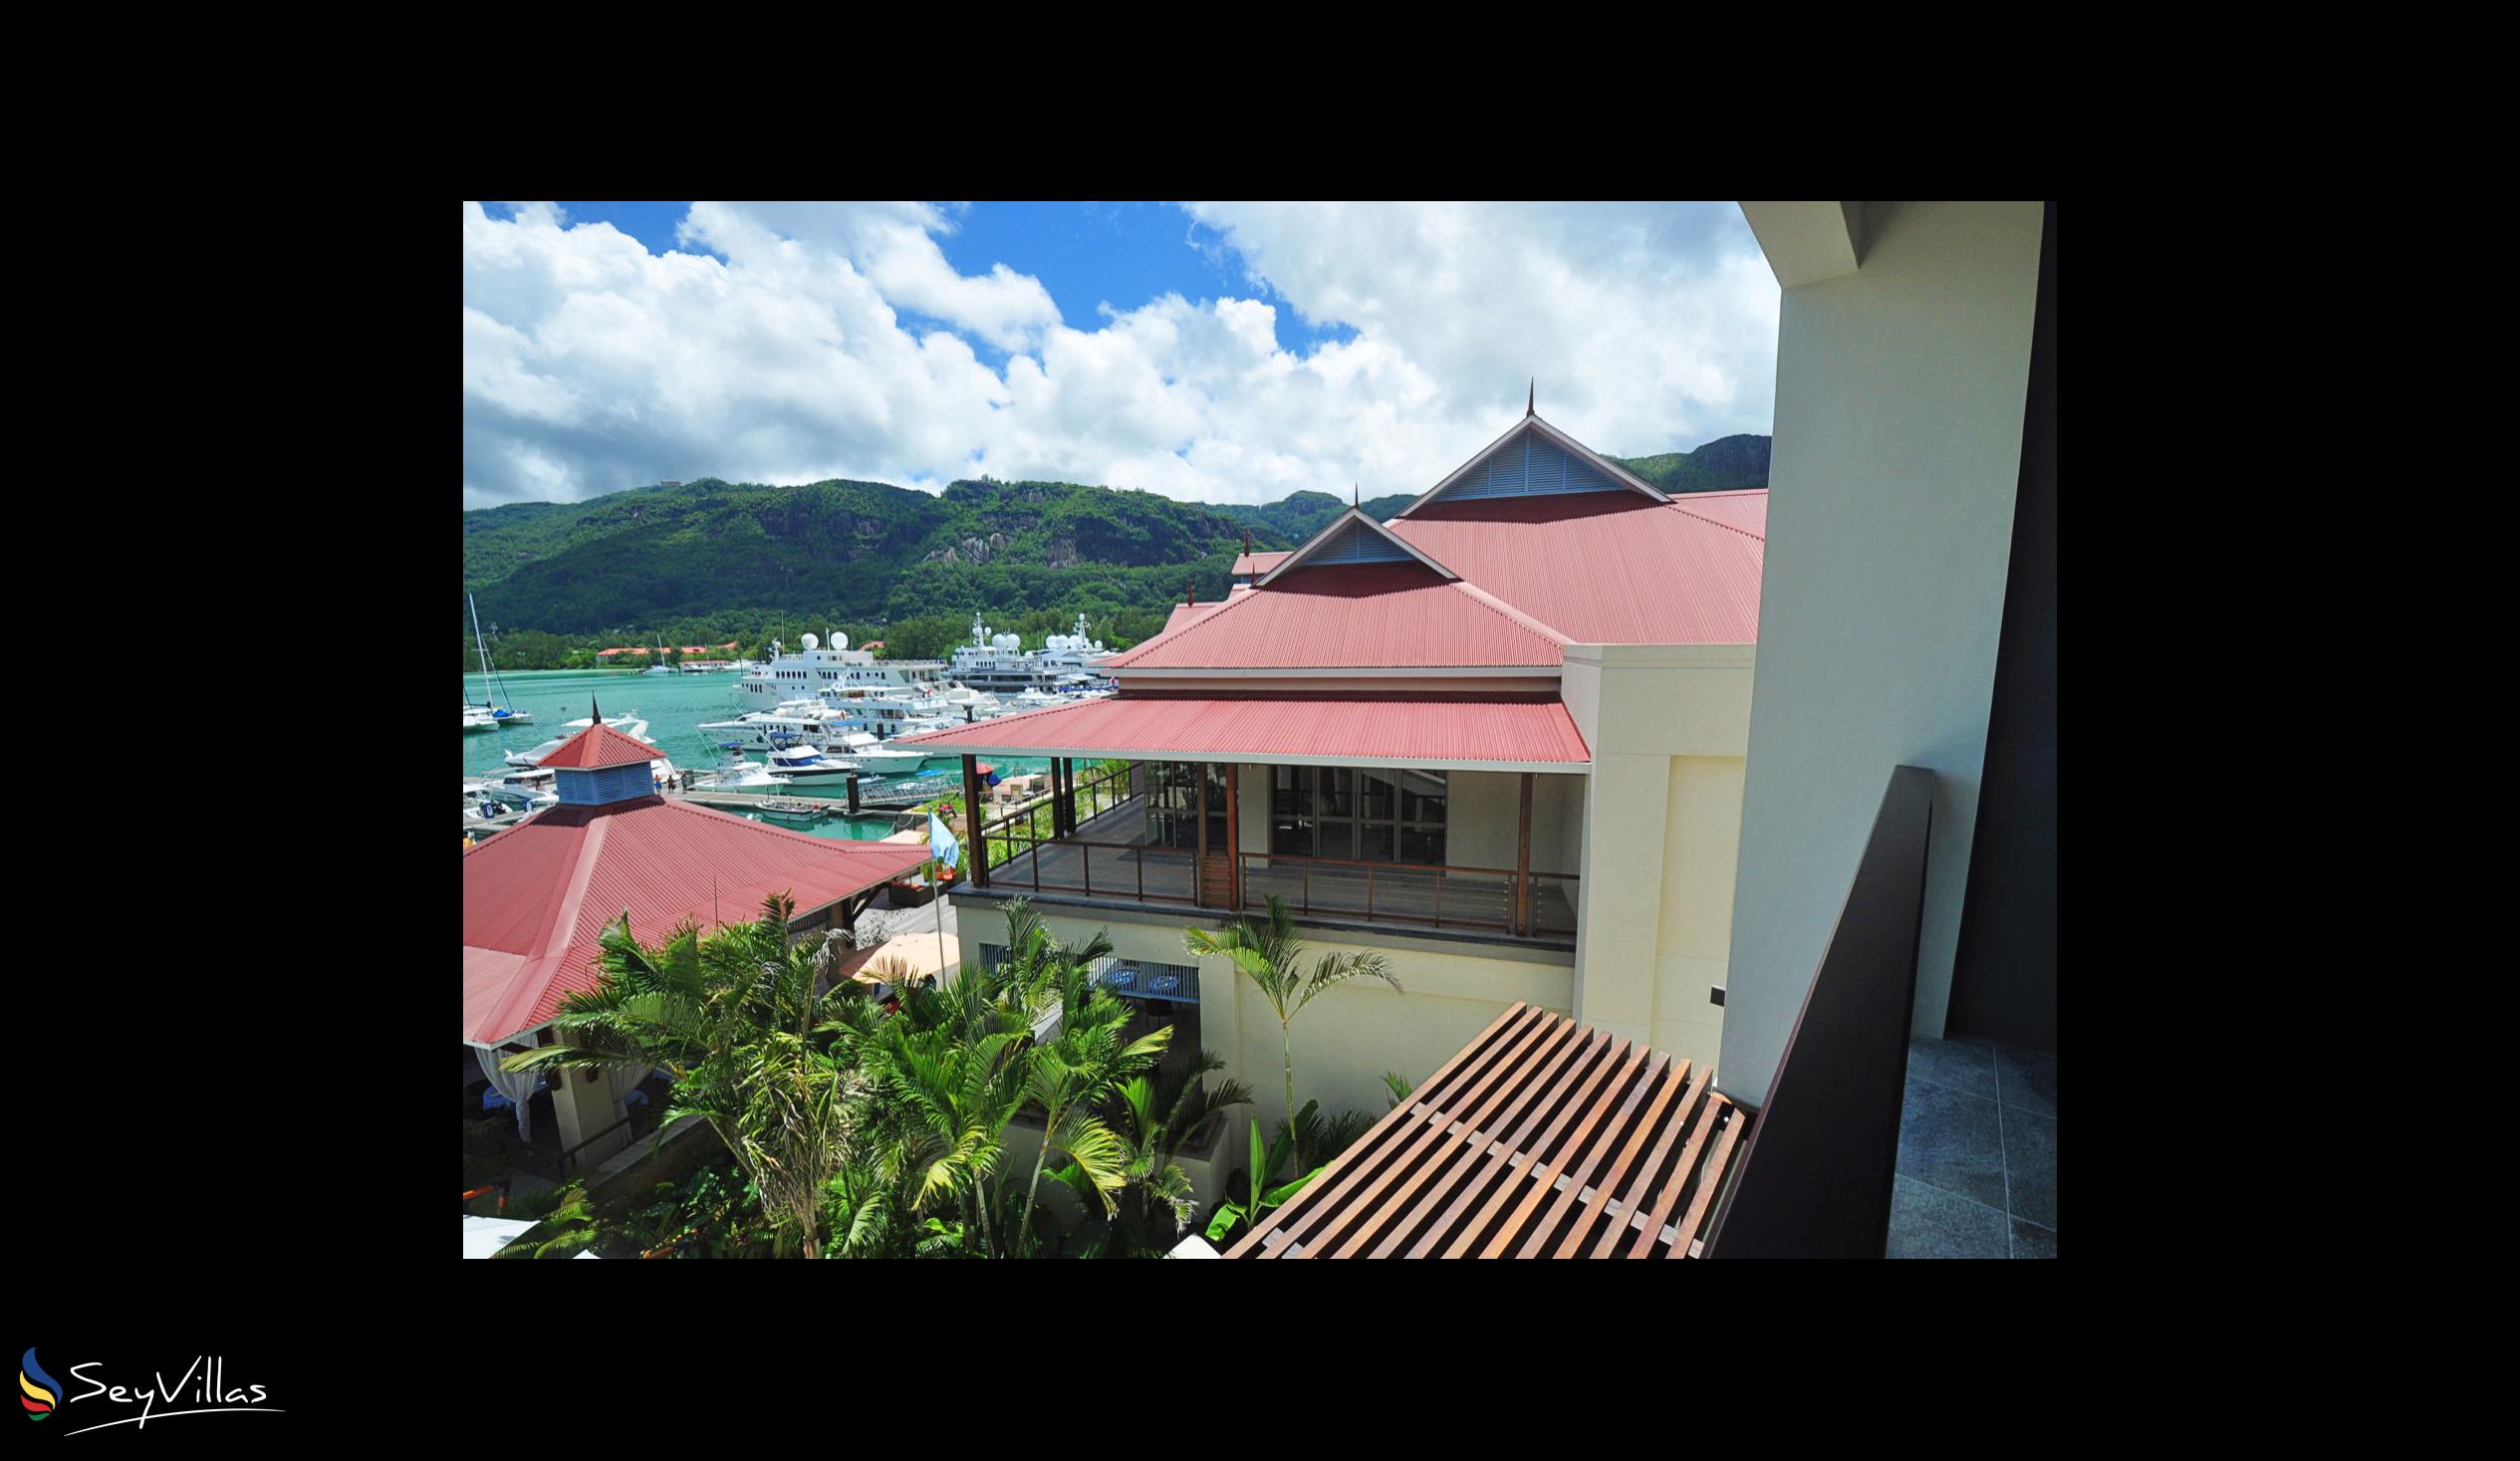 Photo 57: Eden Bleu Hotel - Outdoor area - Mahé (Seychelles)